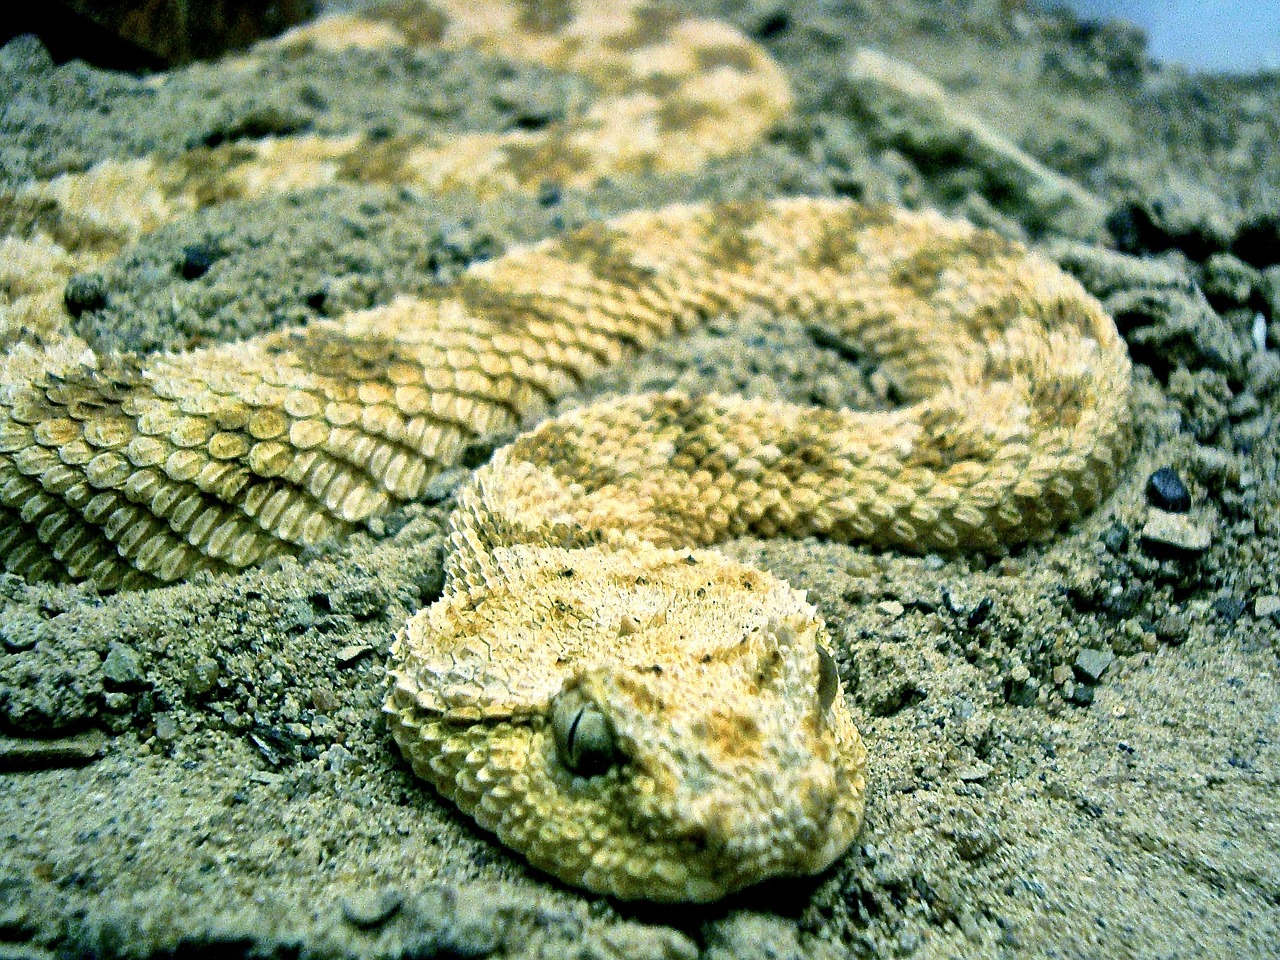 snake animal reptile free photo